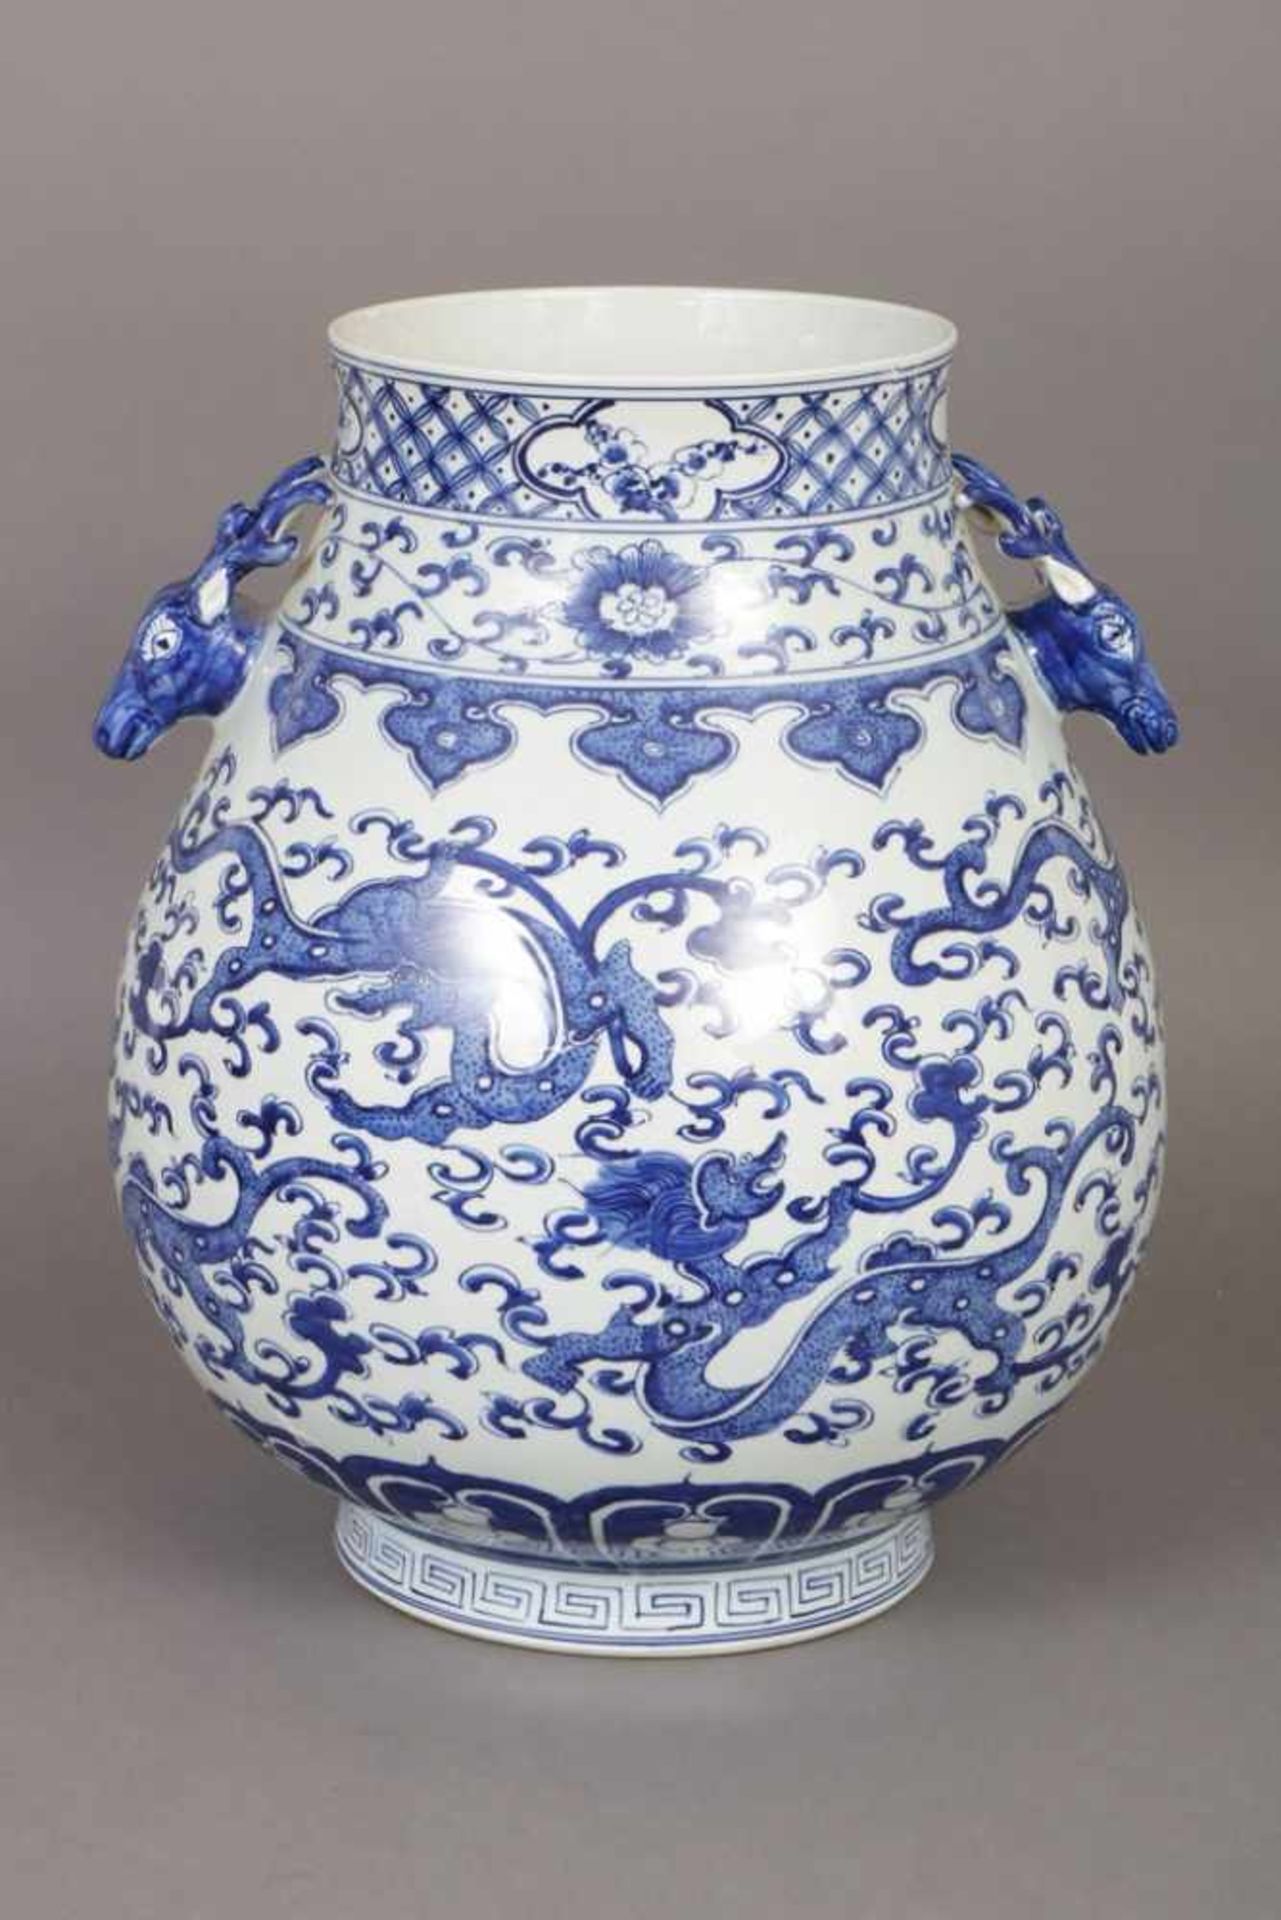 Große chinesische Vase Porzellan, bauchiger Korpus, auf der Schulter 2 seitliche Handhaben in Form